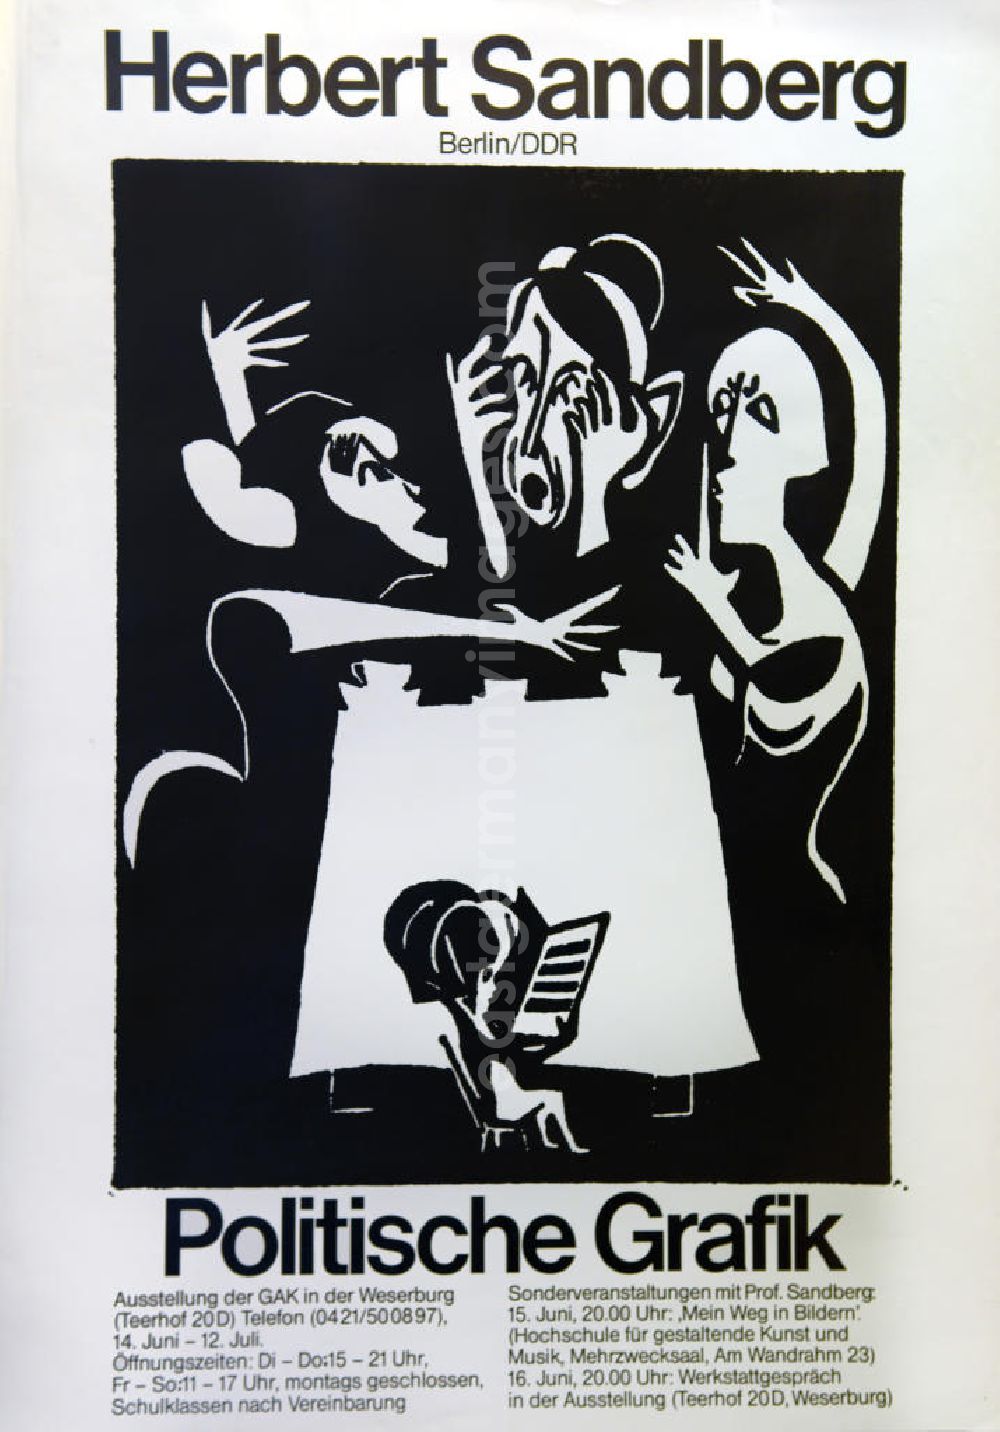 GDR picture archive: Berlin - Plakat der Ausstellung Herbert Sandberg Berlin/DDR, politische Grafik vom 14.06.-12.07.1981 Ausstellung der GAK in der Weserburg Bremen, 59,5x84,